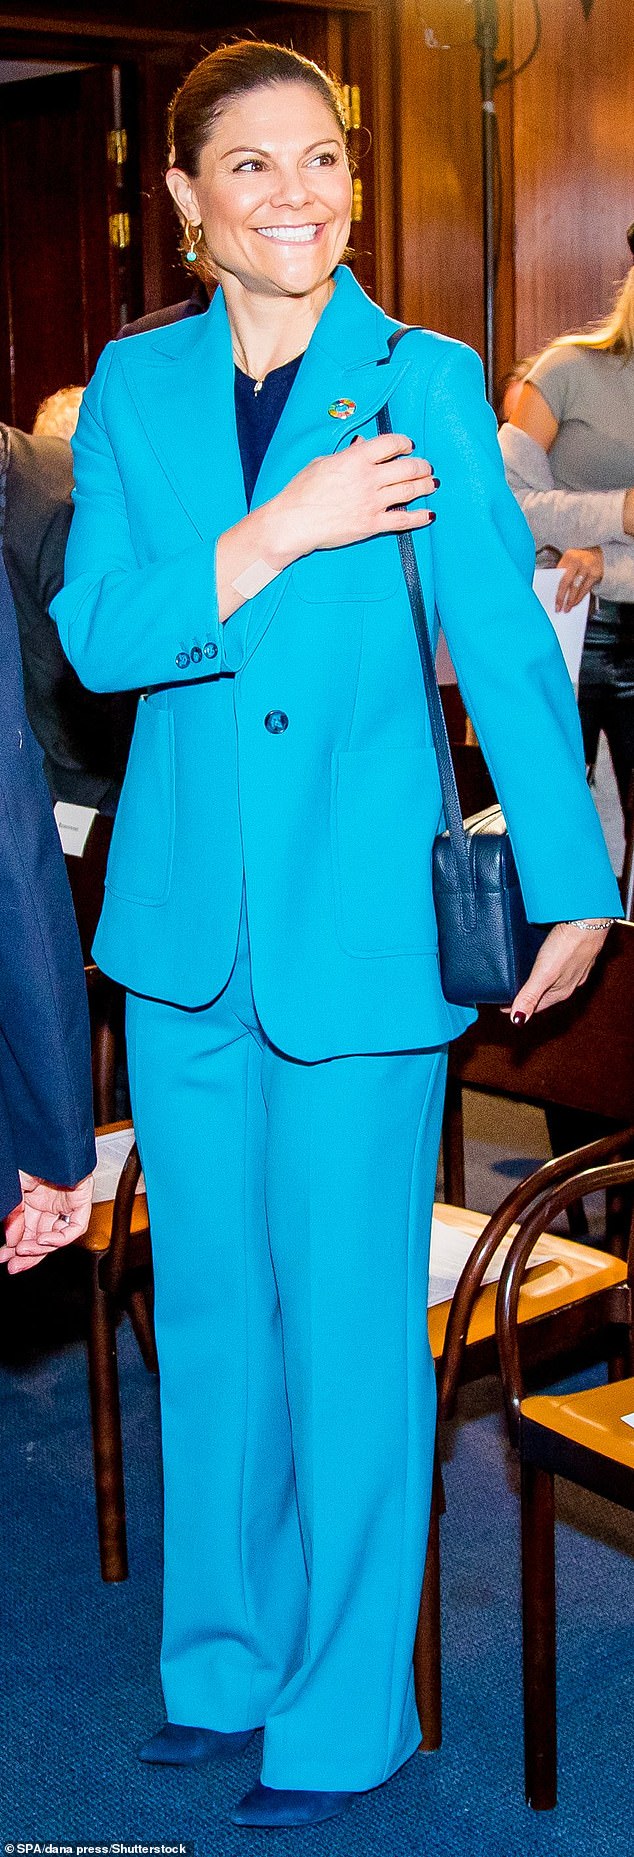 Kronprinzessin Victoria von Schweden (im Bild) war heute bei einem Seminar in Stockholm in ihrer komplett blauen Kleidung verblüfft